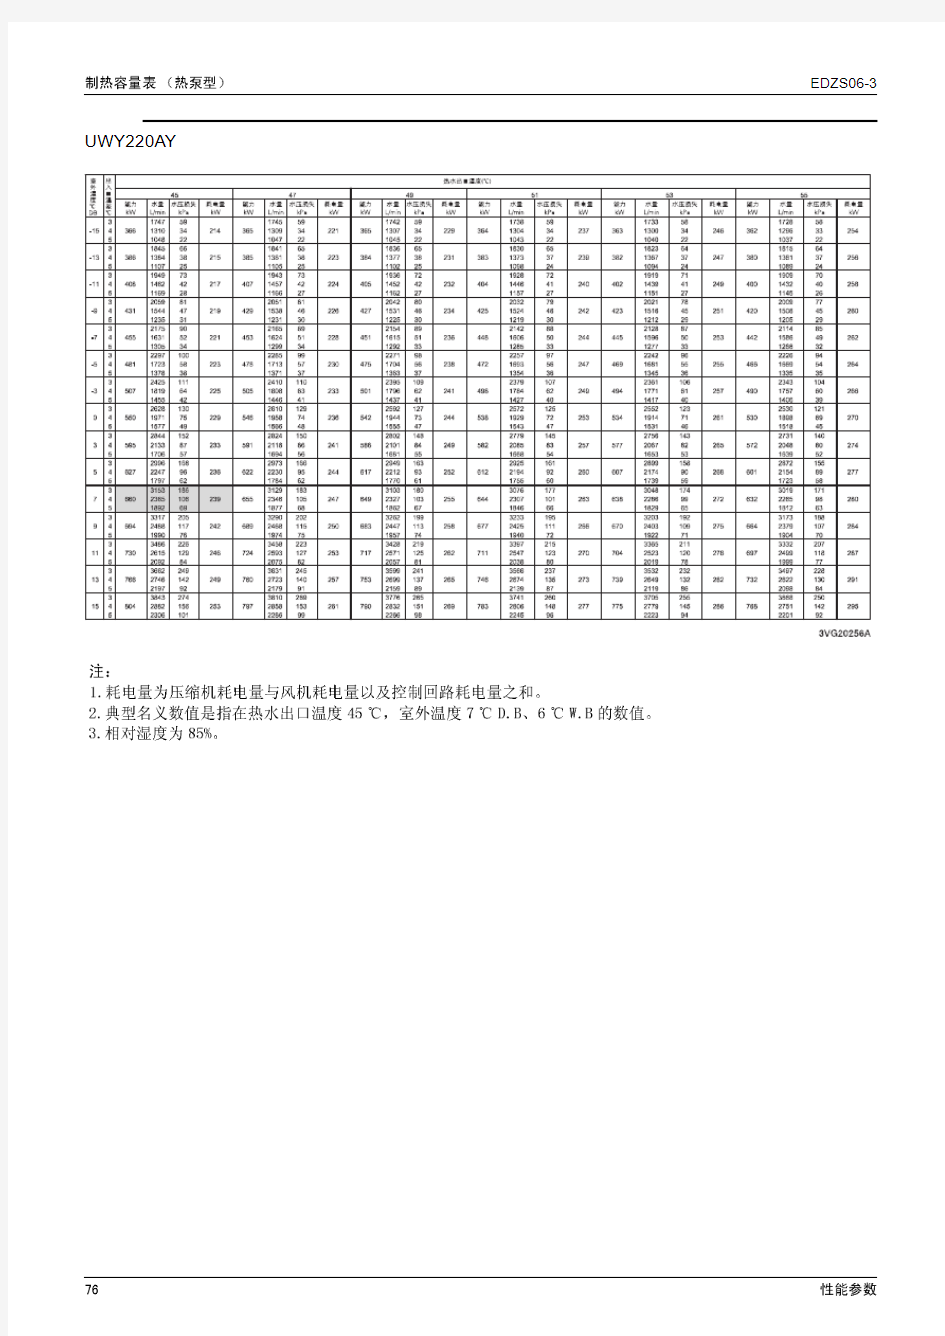 大金单螺杆风冷式冷水机AY系列技术资料(中)